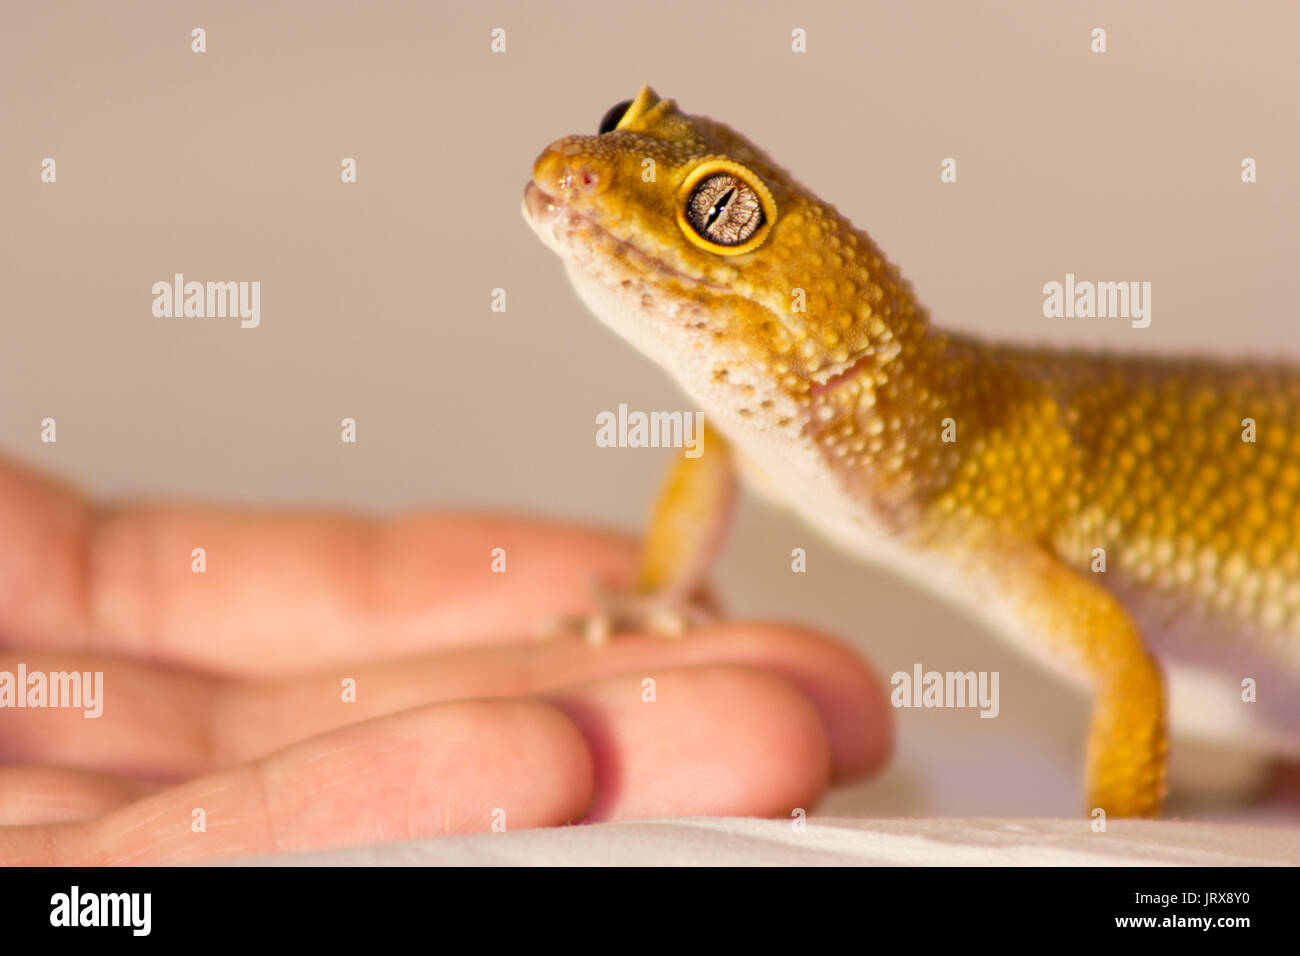 Gecko orange mignon chauffage dans les mains avec plaisir Banque D'Images